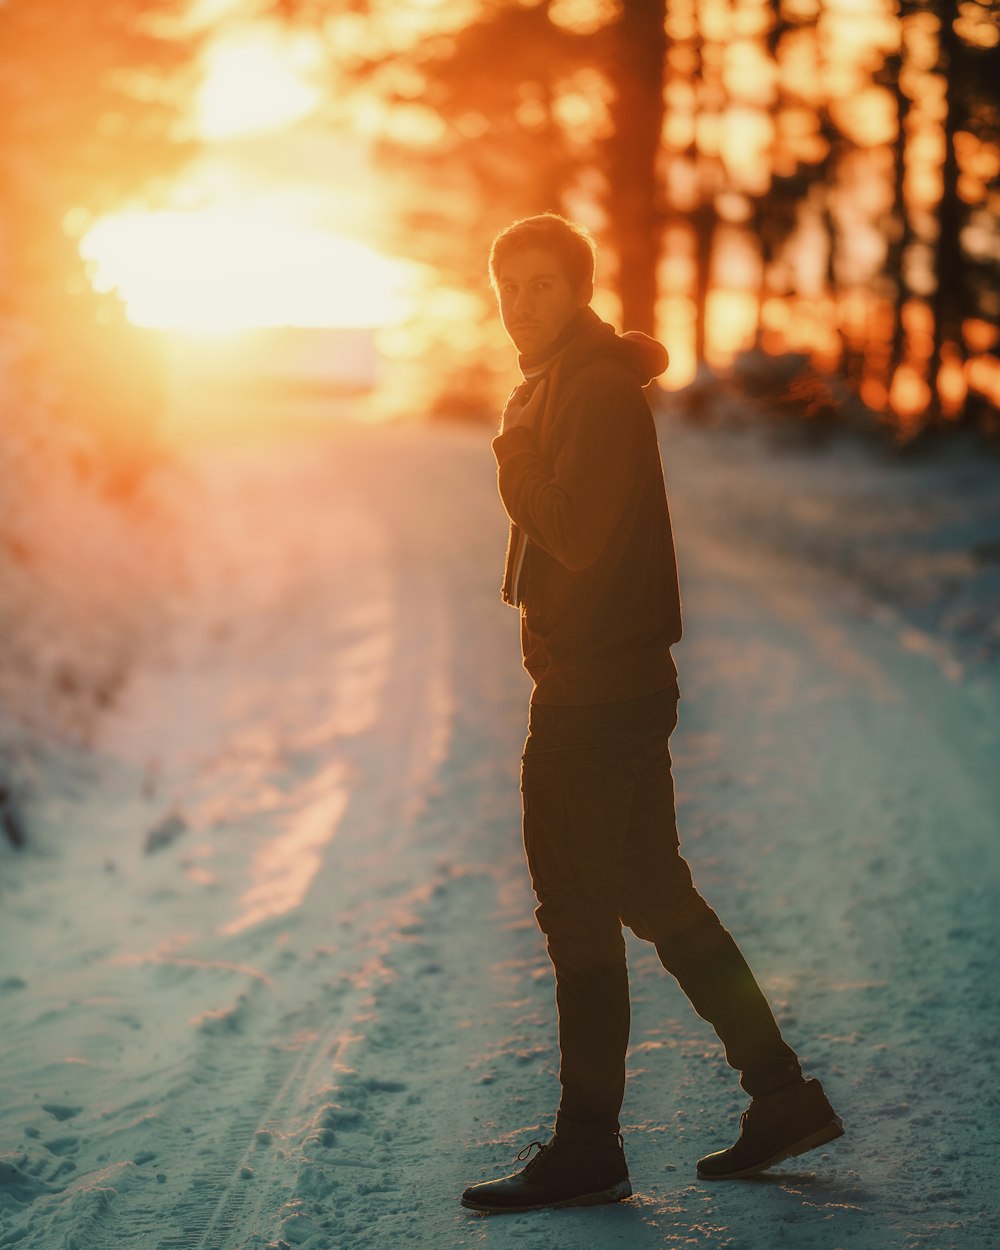 Mann in brauner Jacke tagsüber auf schneebedecktem Boden